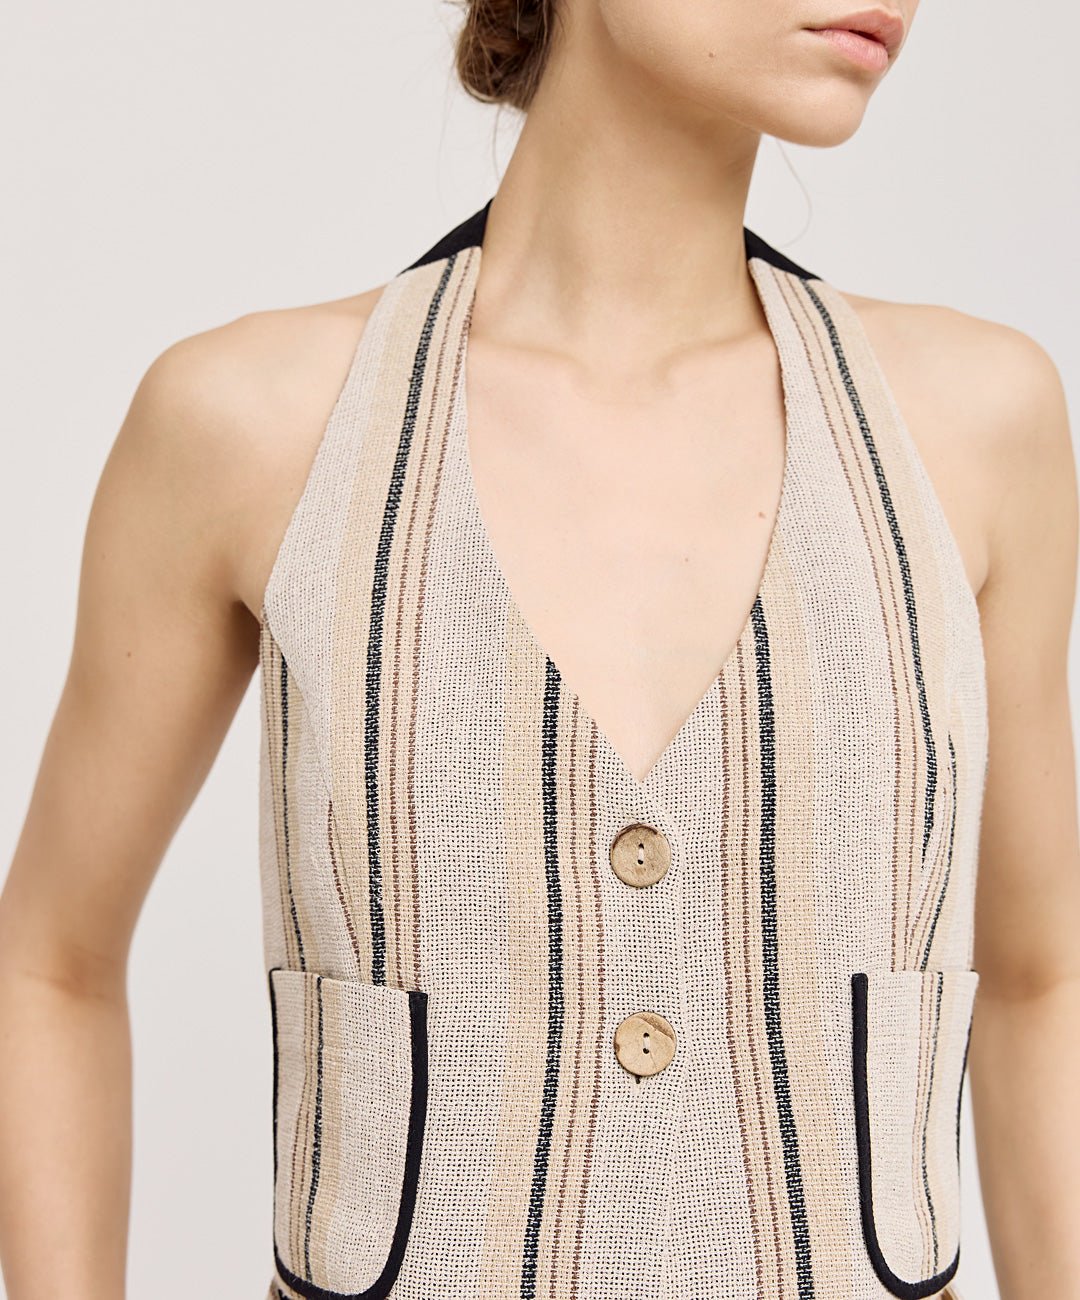 Μπλούζα γιλέκο με ανοιχτή πλάτη Access Fashion - A Collection Boutique